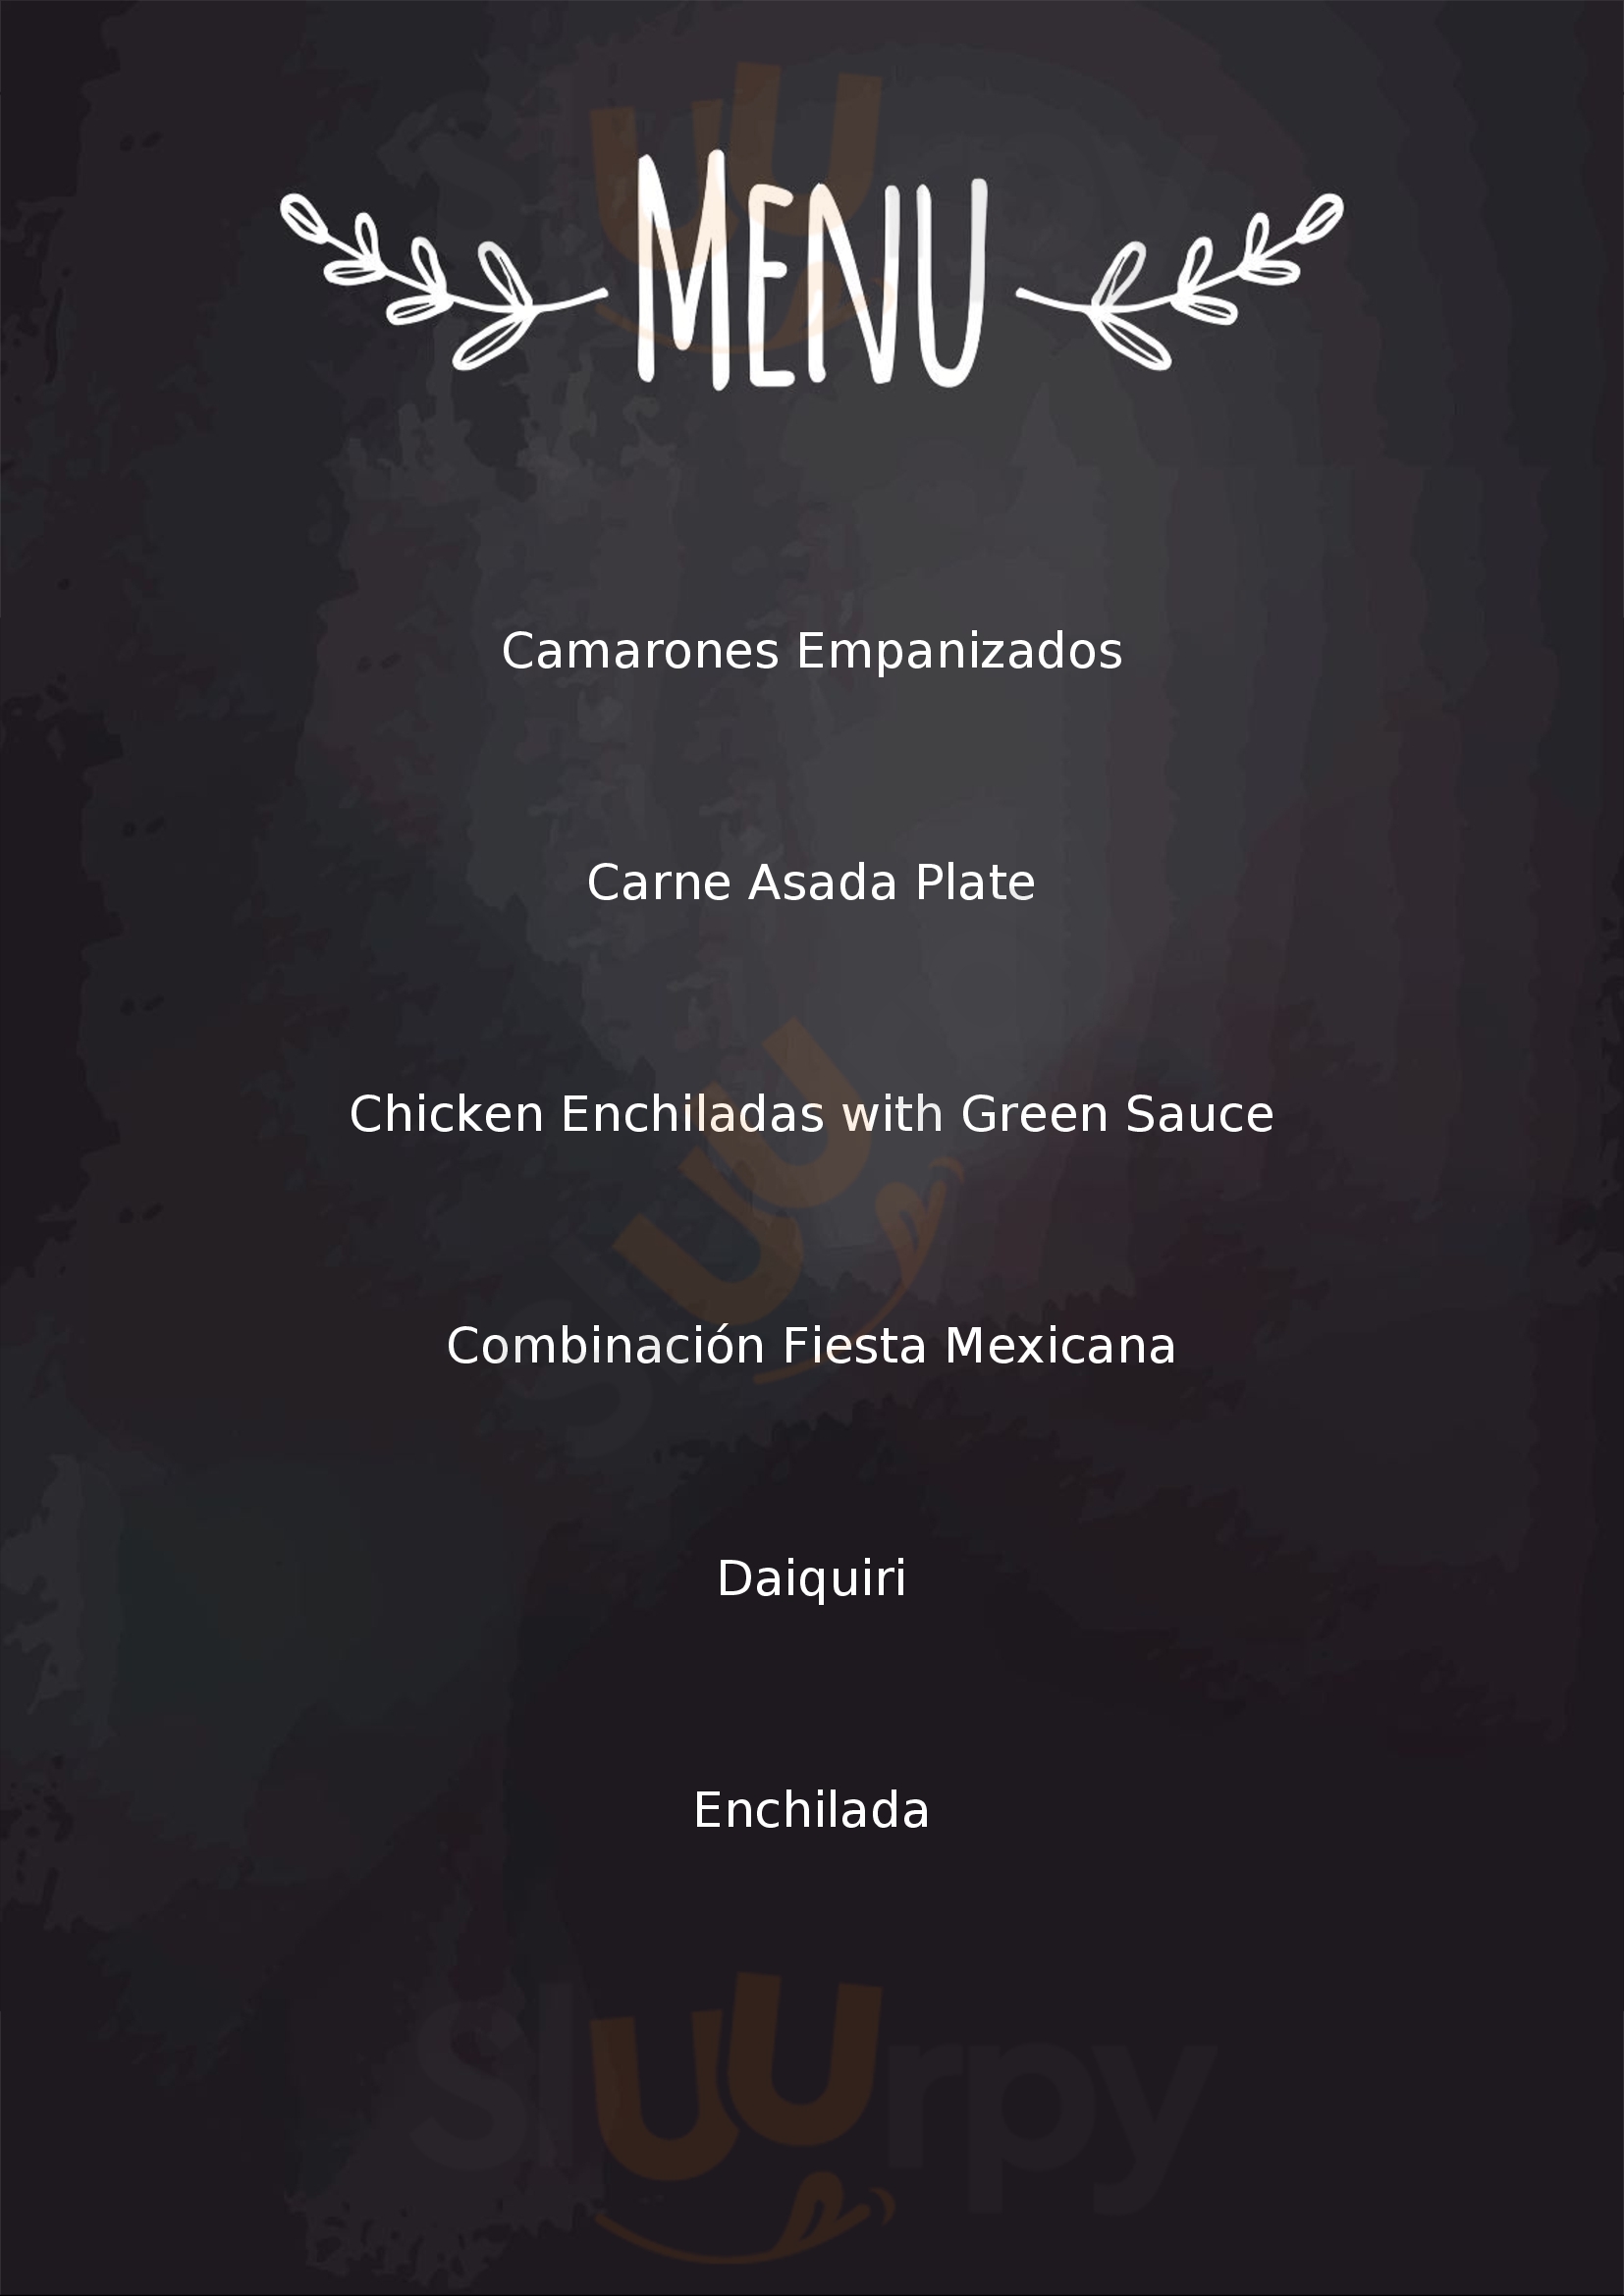 La Curva Restaurant & Sport Bar Puerto Peñasco Menu - 1